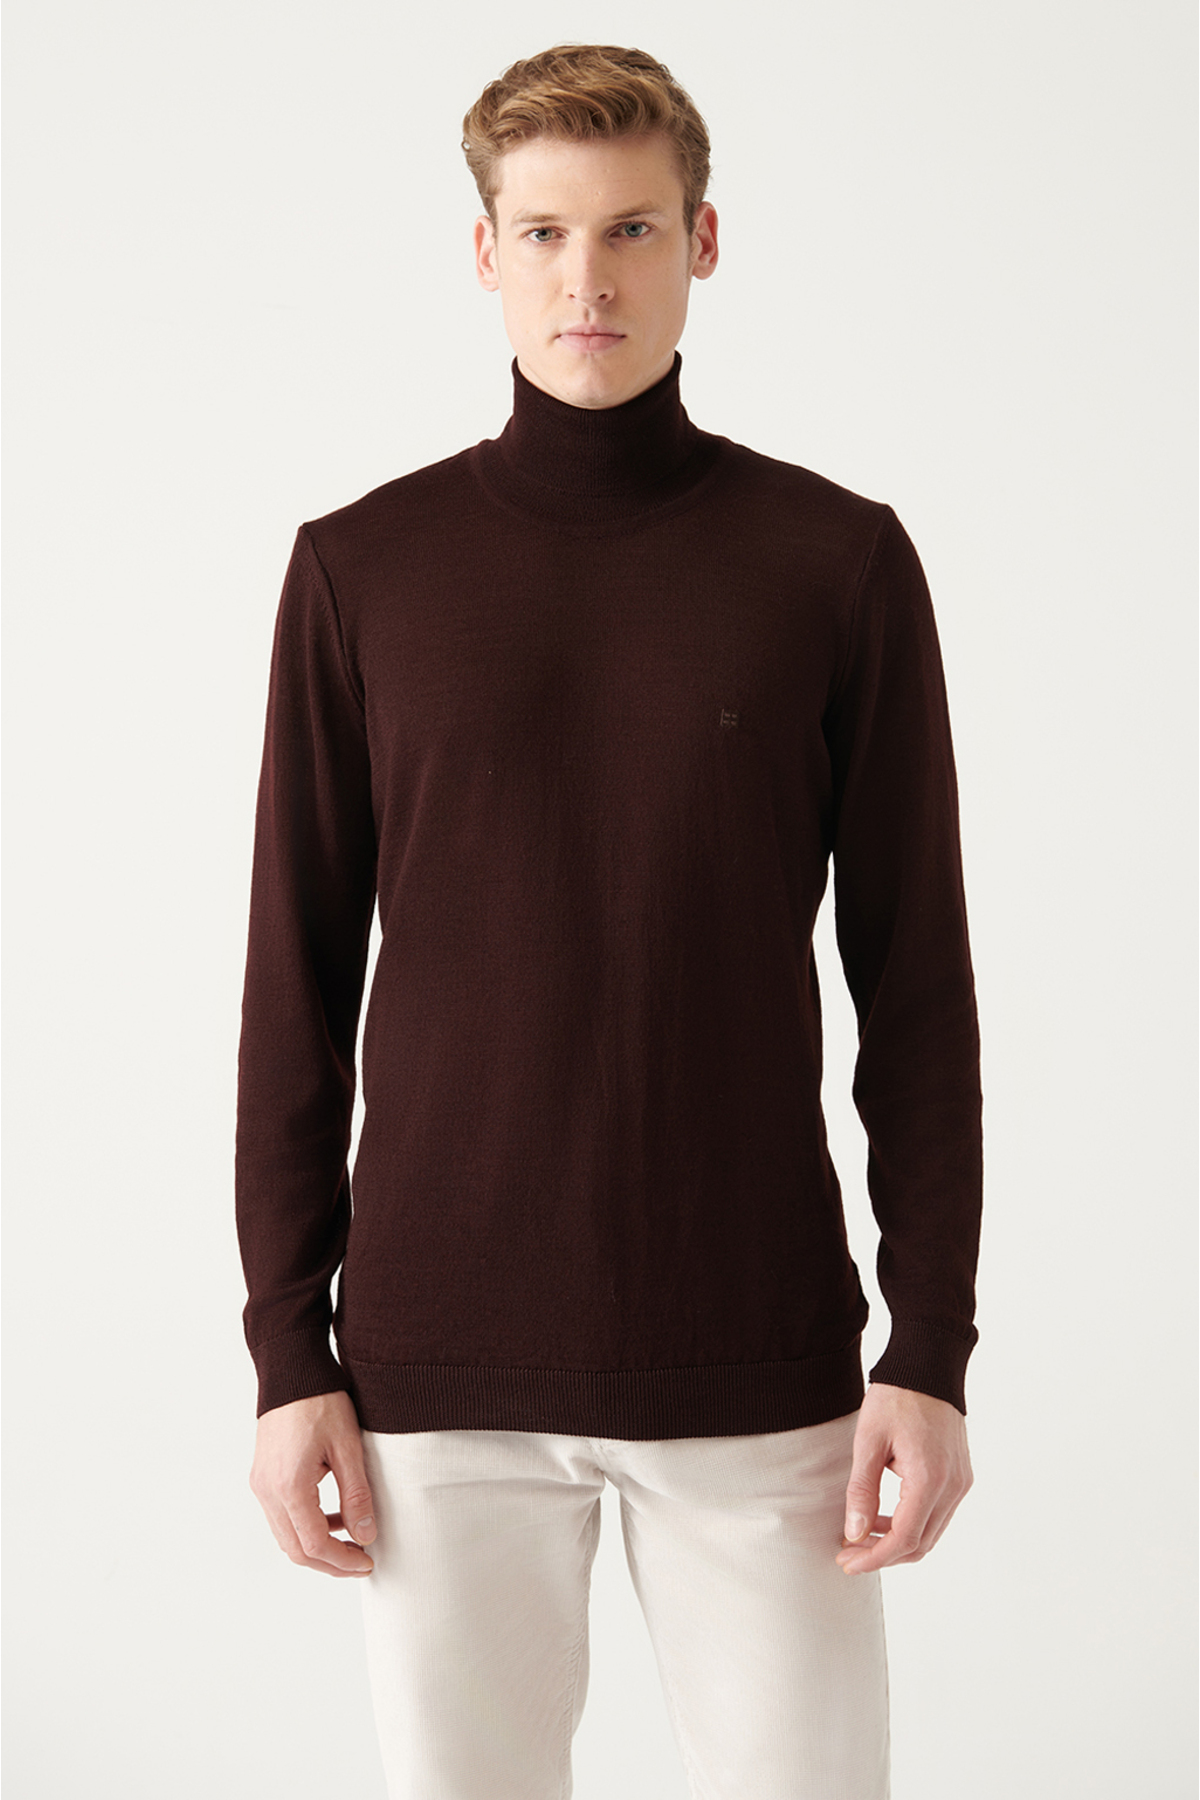 Levně Avva Men's Burgundy Full Turtleneck Wool Blended Regular Fit Knitwear Sweater